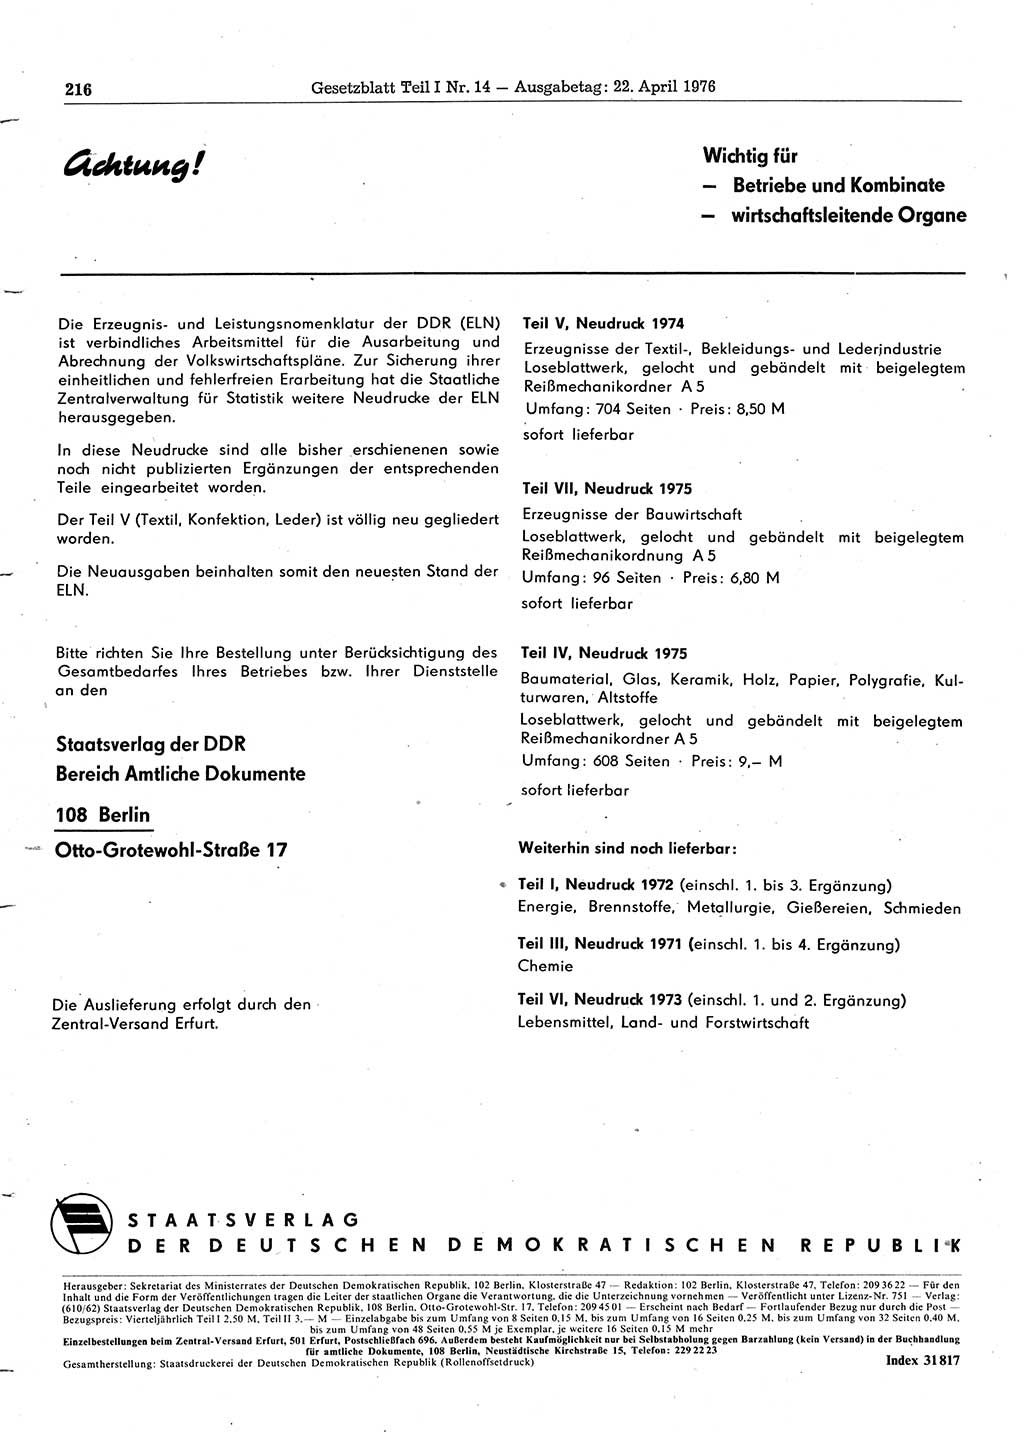 Gesetzblatt (GBl.) der Deutschen Demokratischen Republik (DDR) Teil Ⅰ 1976, Seite 216 (GBl. DDR Ⅰ 1976, S. 216)